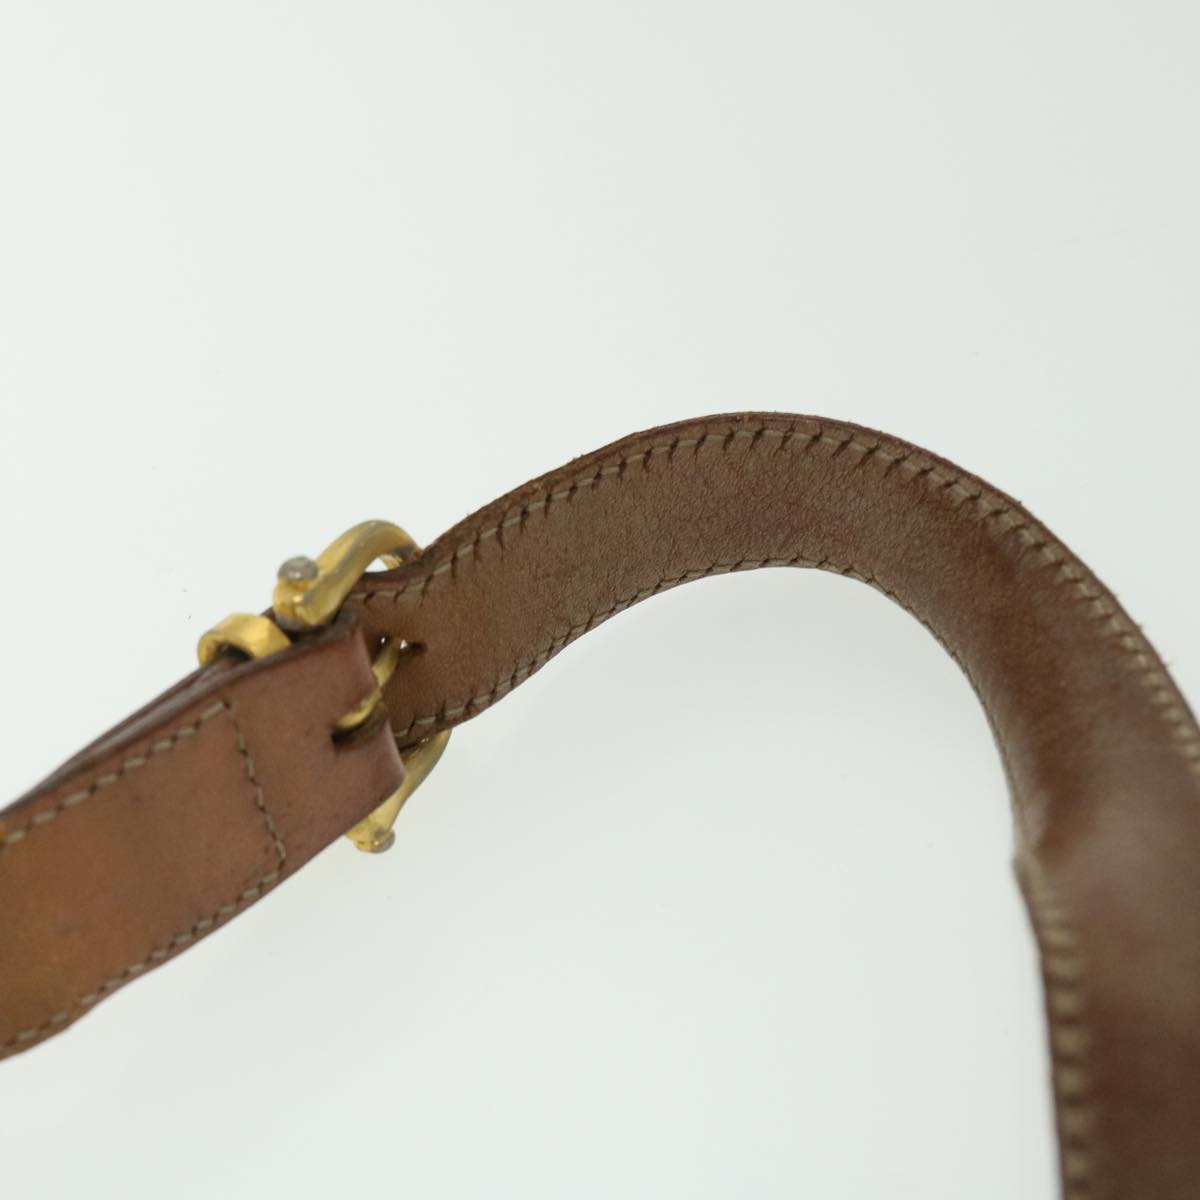 CELINE Macadam Canvas Shoulder Bag PVC Leather 2Set Brown Beige Auth fm2643